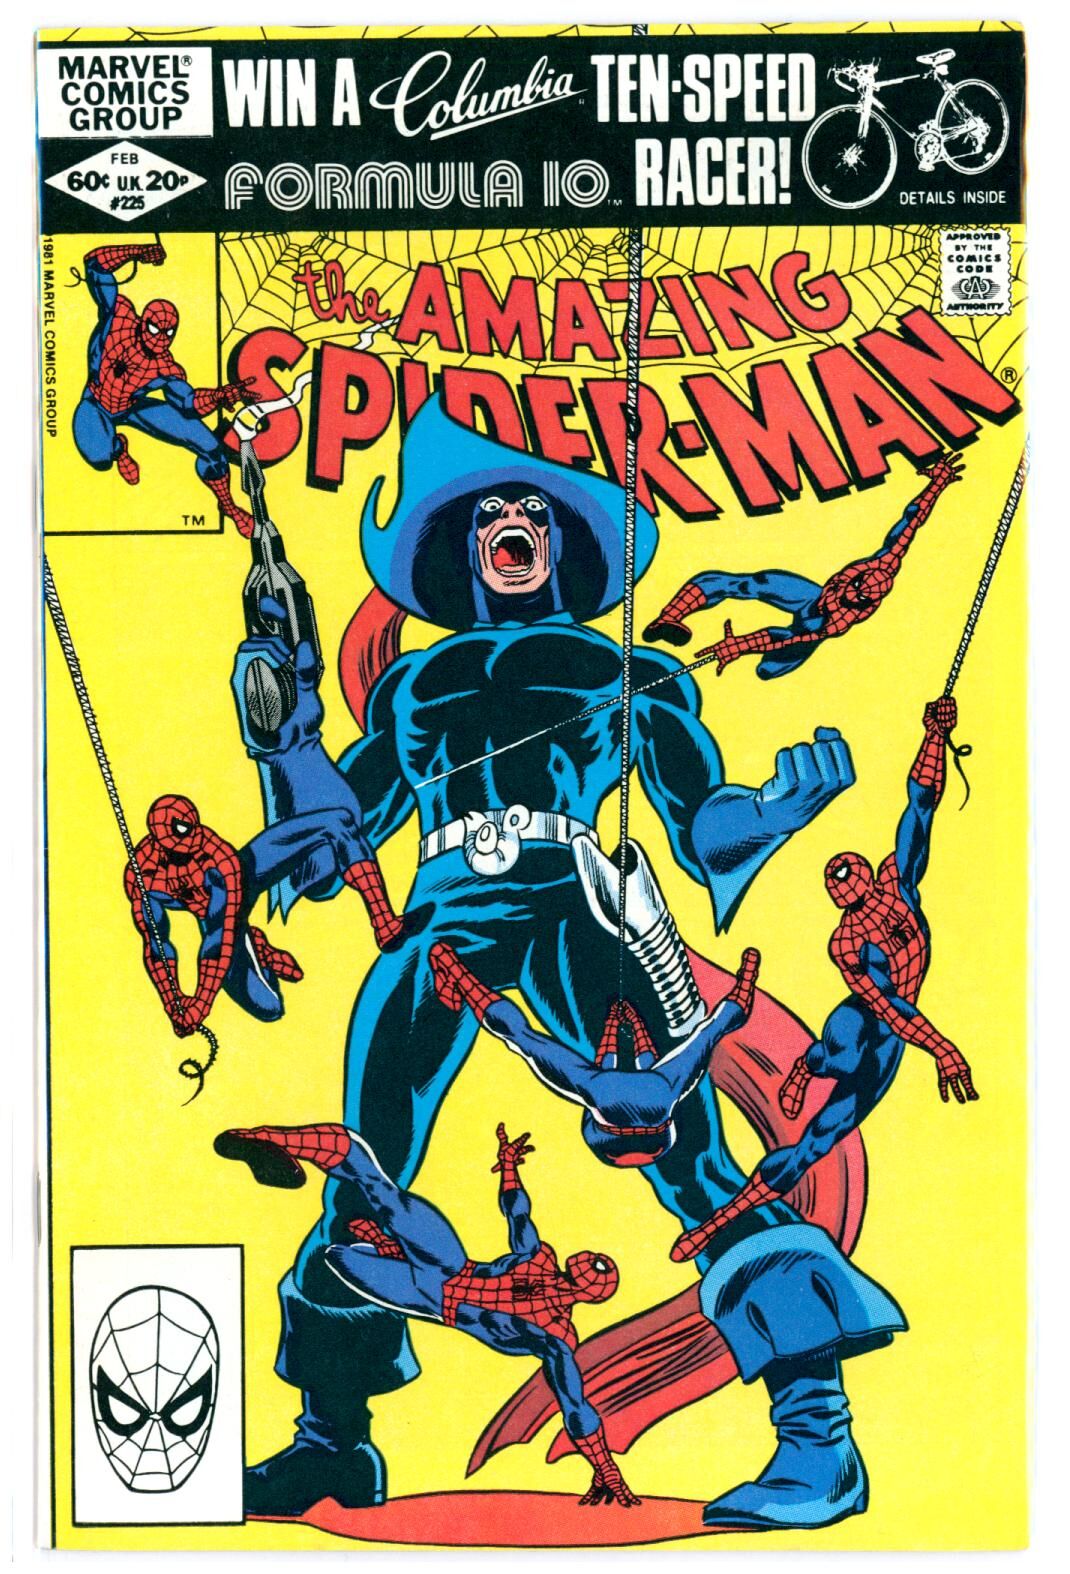 Amazing Spider-Man #225